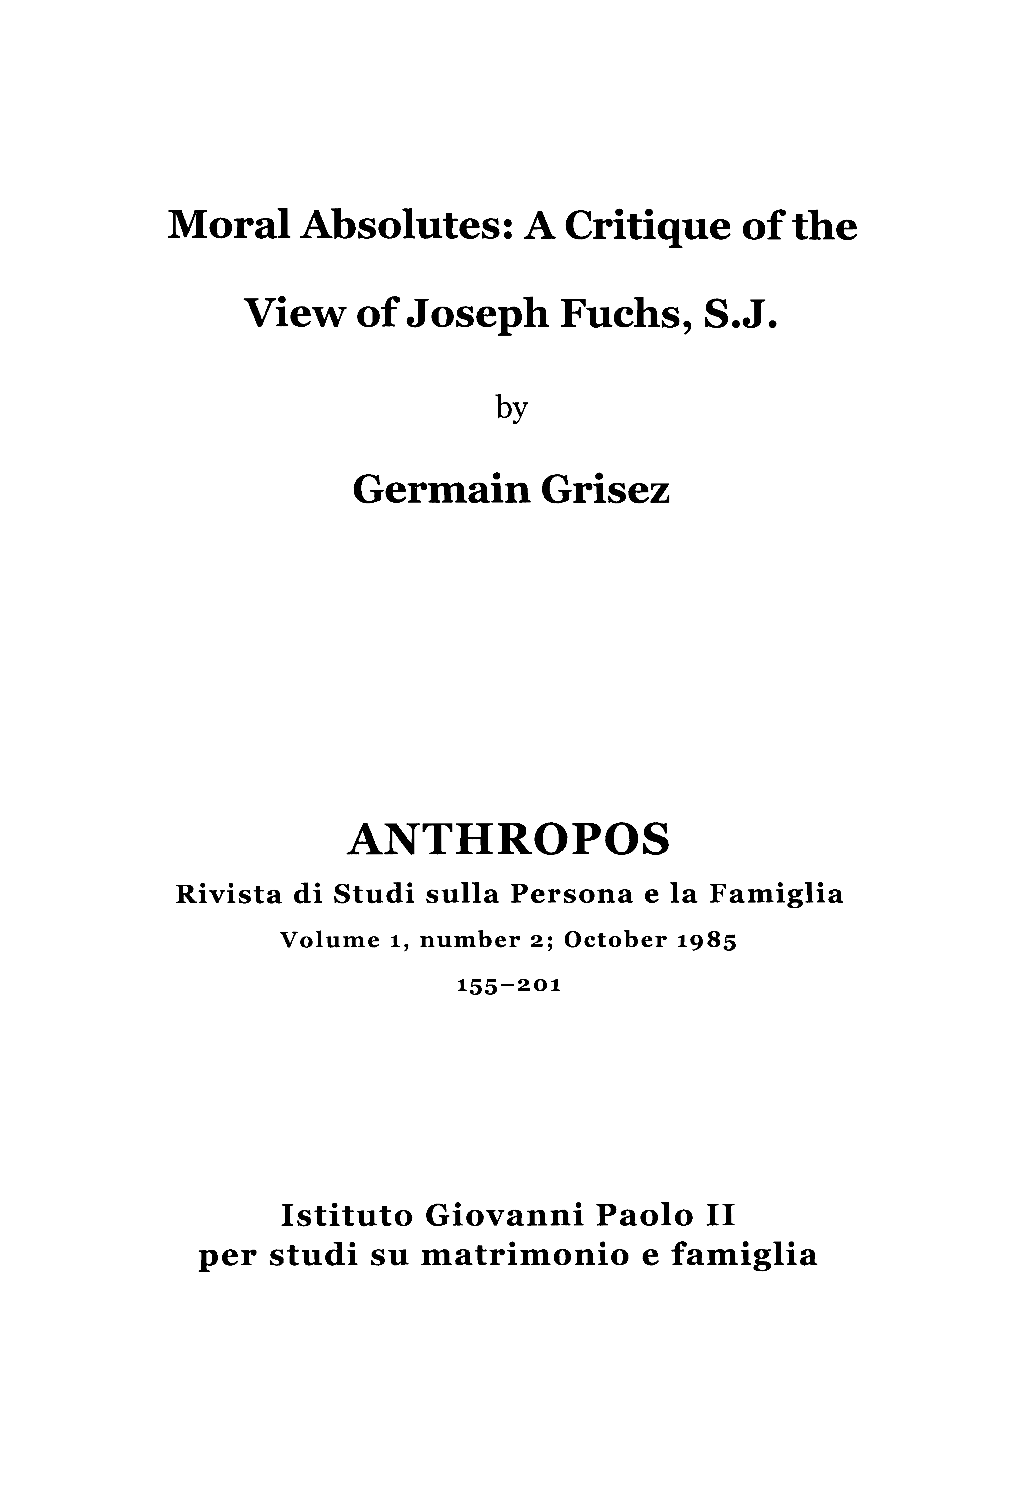 ANTHROPOS Rivista Di Studi Sulla Persona E La Famiglia Volume 1, Number 2; October 1985 155-201